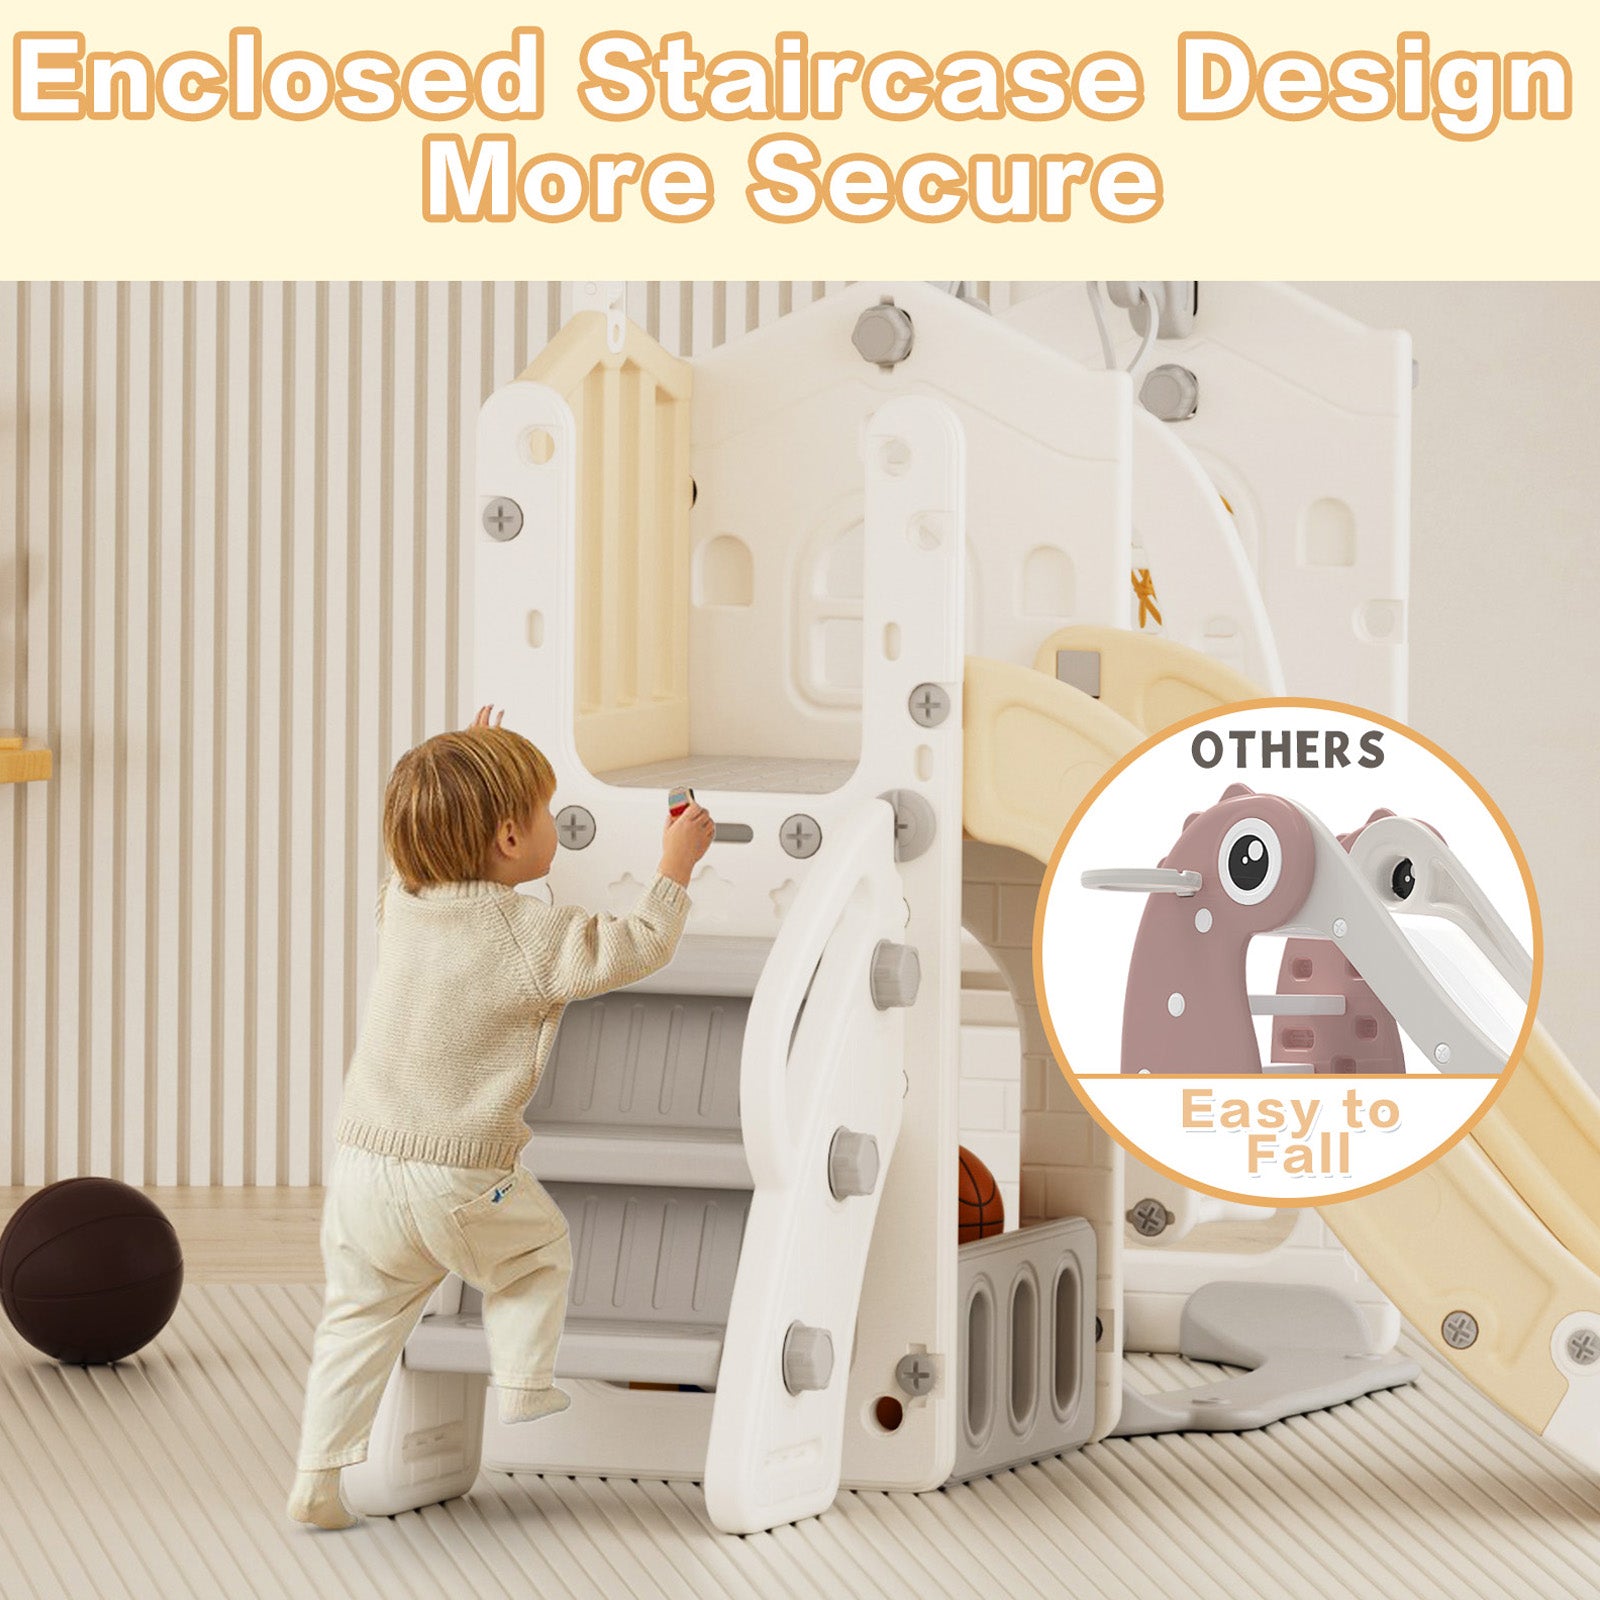 XJD 6 in 1 Toddler Slide Set Indoor Outdoor Plastic Freestanding Slide, Beige/Coffee